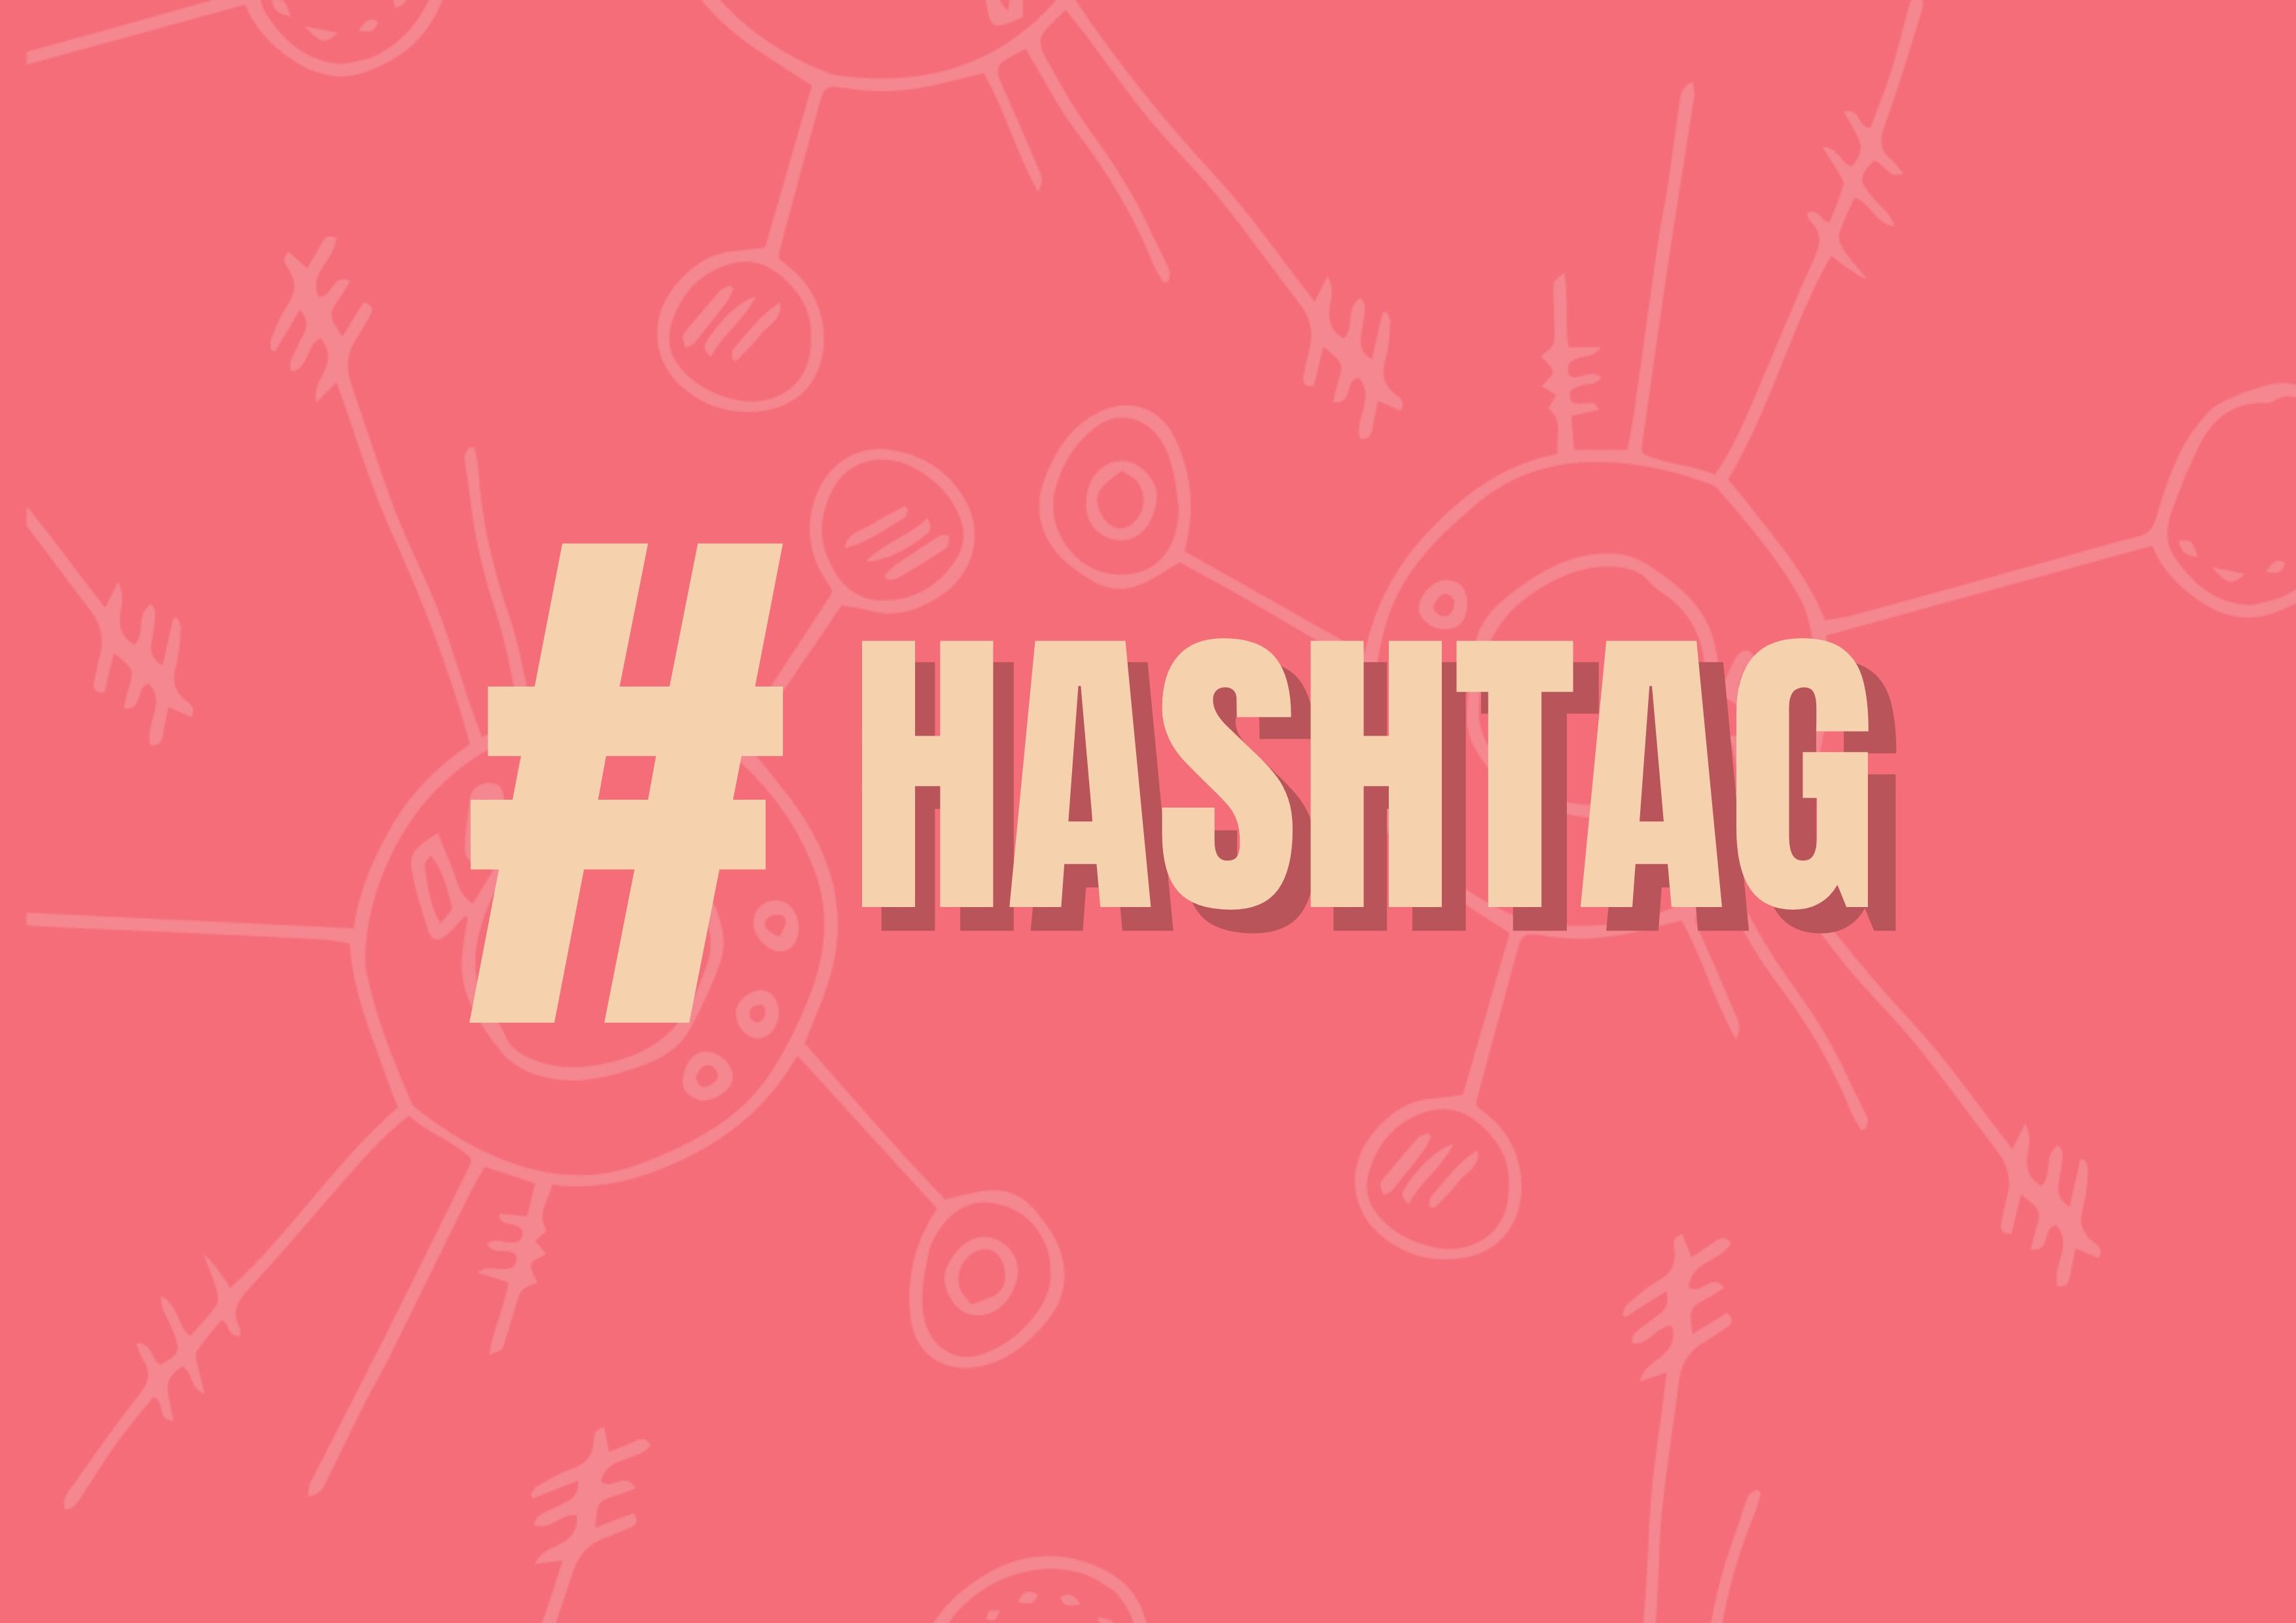 Fondo rojo con "#hashtag" escrito en amarillo como título - Por qué podrías necesitar cambiar los hashtags en tus publicaciones - Imagen